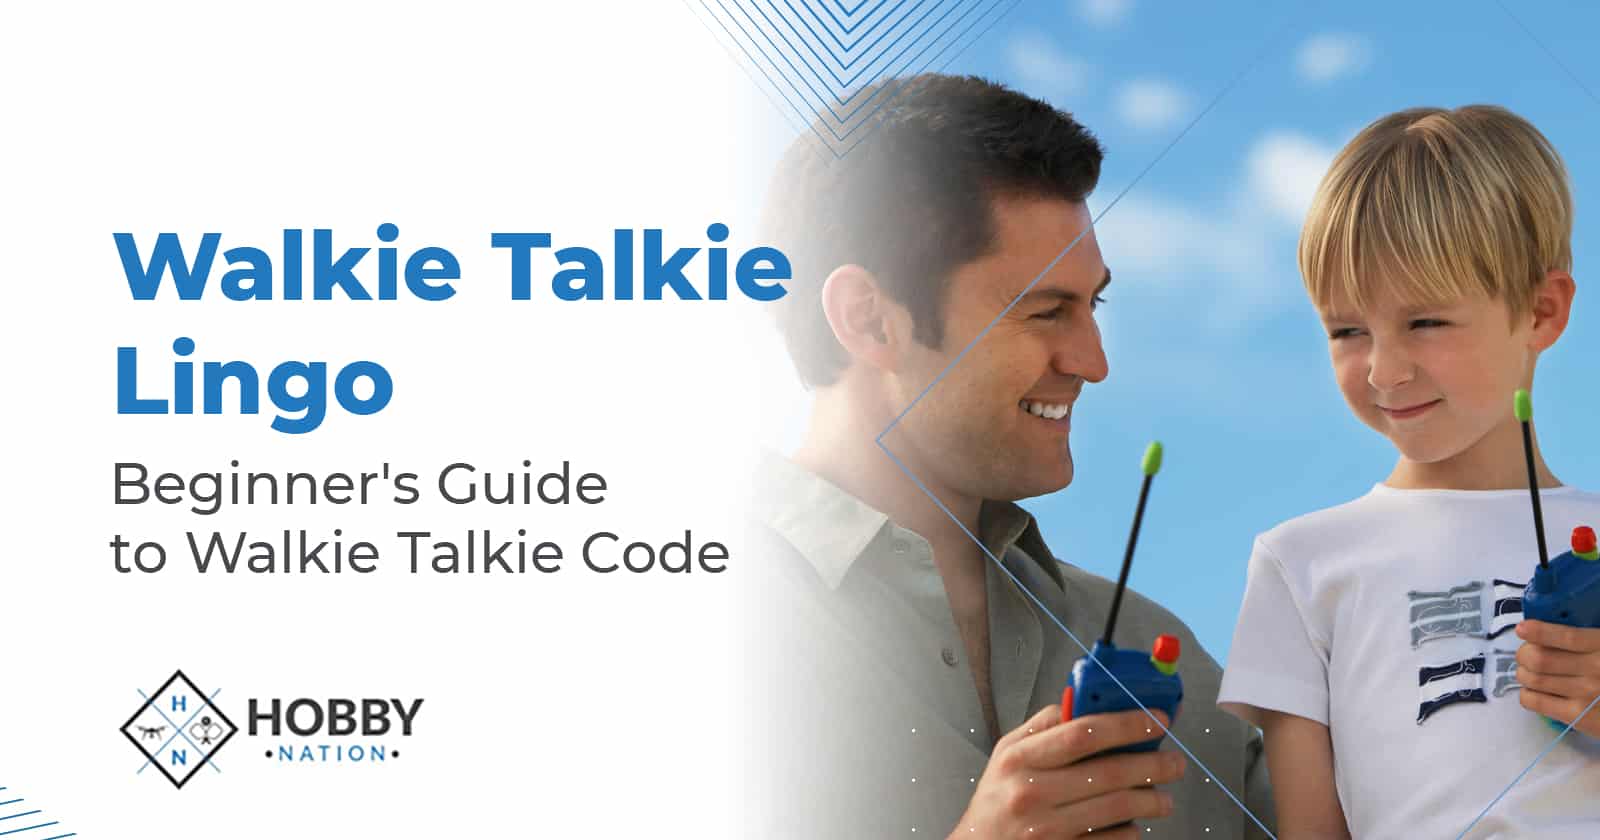 Walkie Talkie Lingo – Beginner’s Guide to Walkie Talkie Code